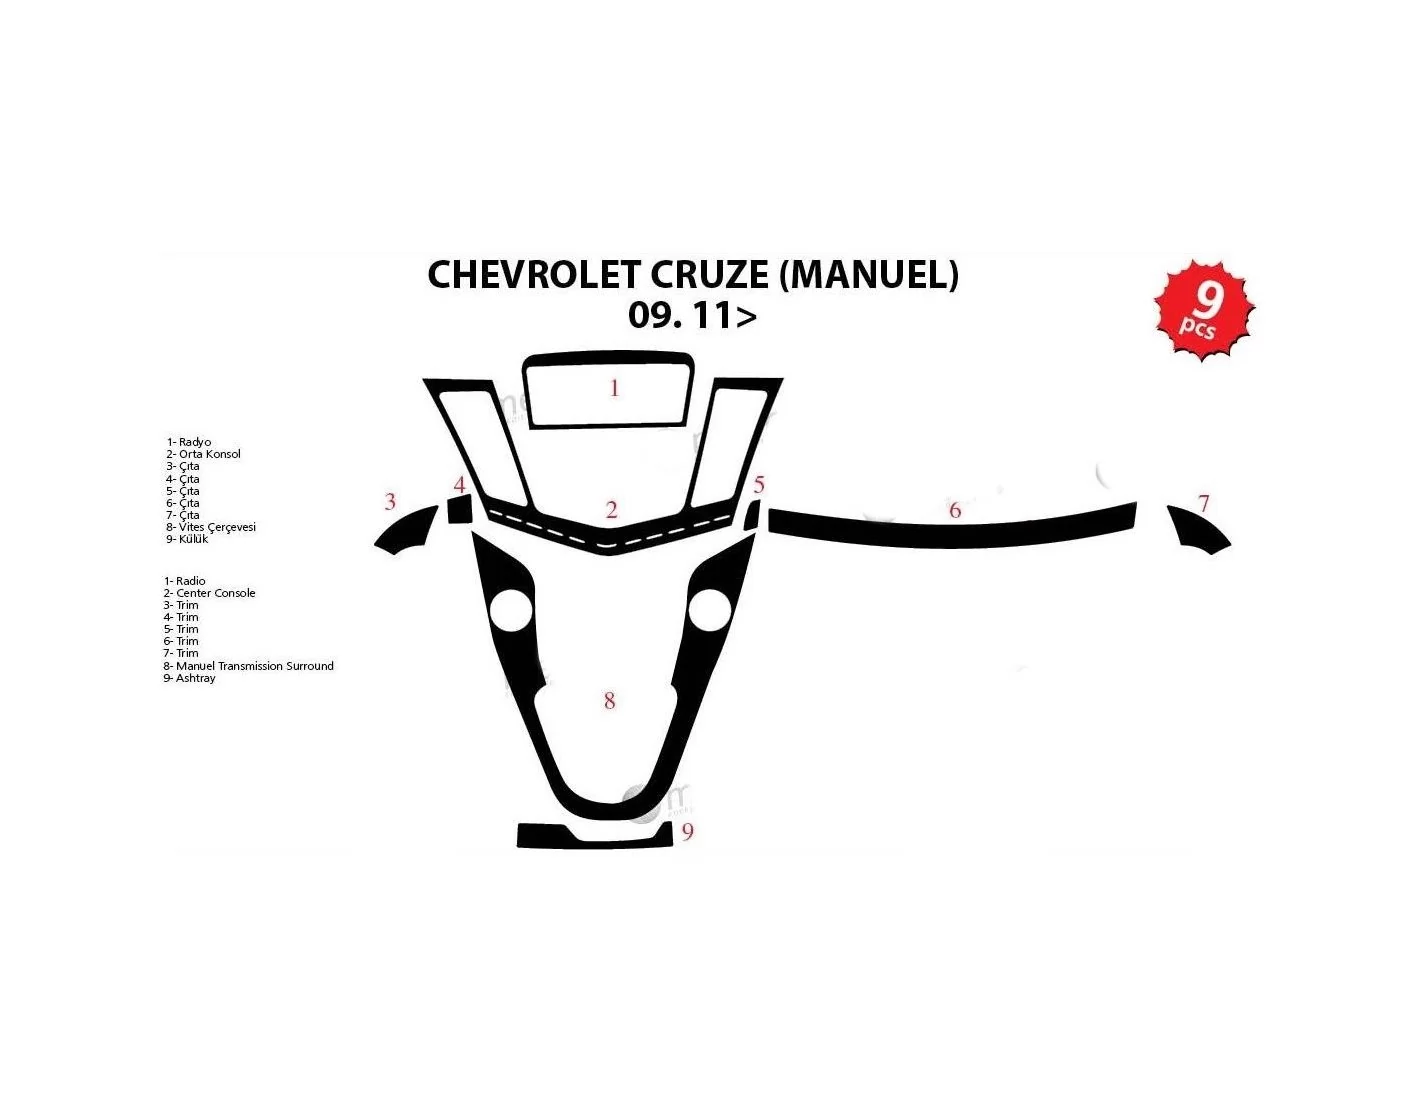 Chevrolet Cruse Manuel 2009 Mittelkonsole Armaturendekor Cockpit Dekor 9-Teilige - 1- Cockpit Dekor Innenraum